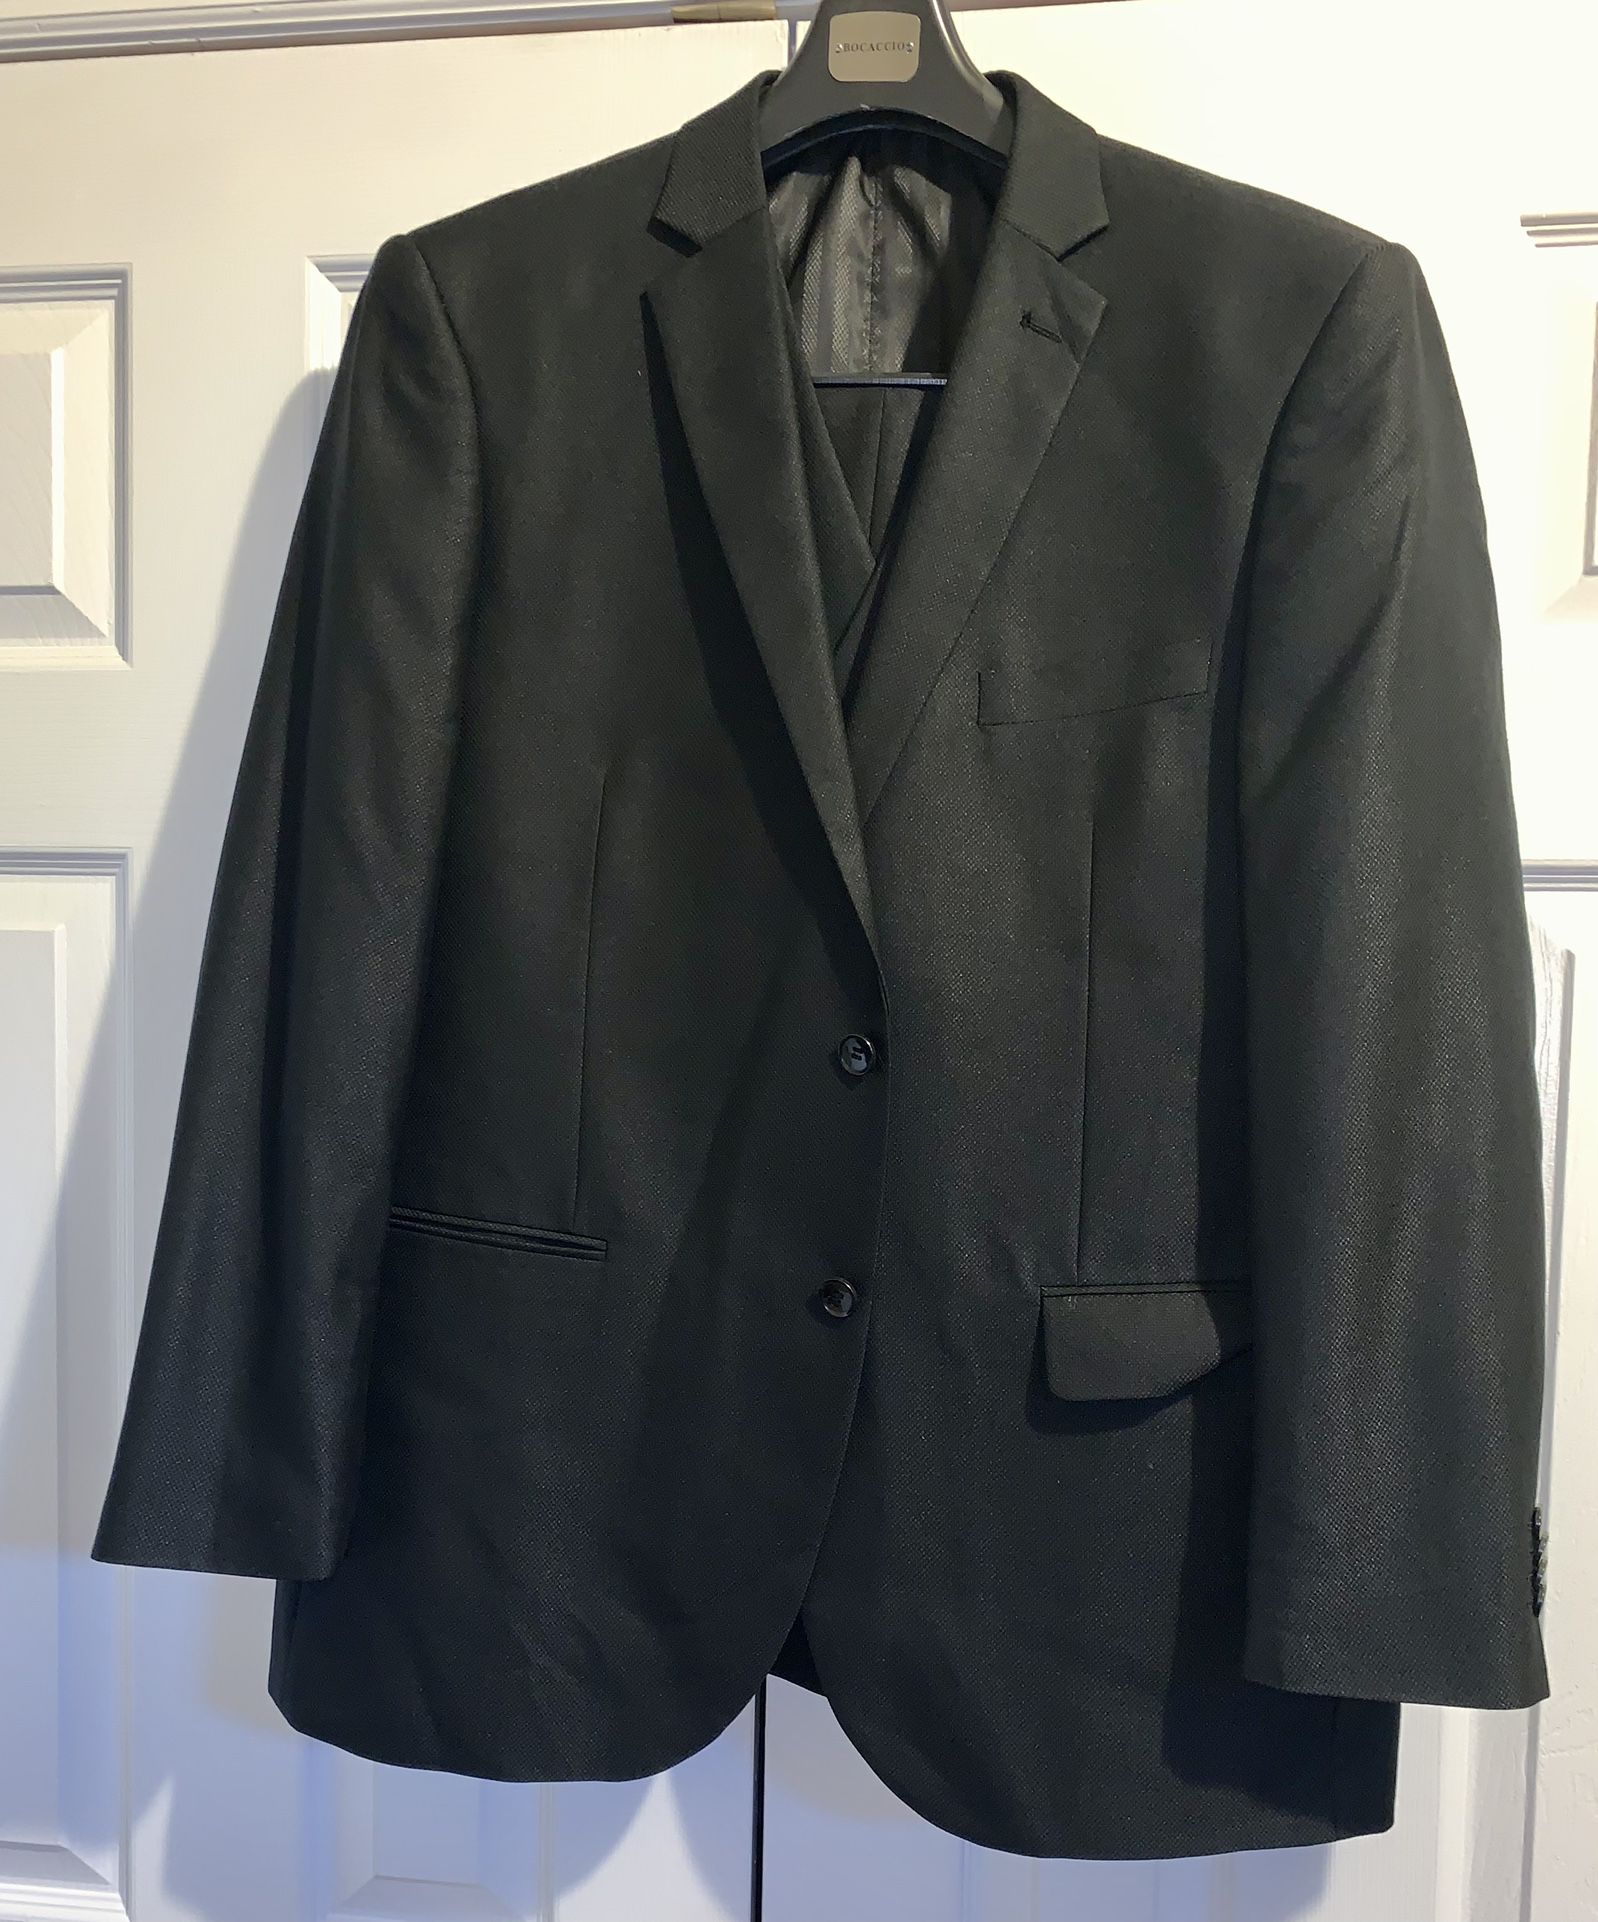 Mens Solid Black #2 Stylish Dress Suit Excellent Condition 